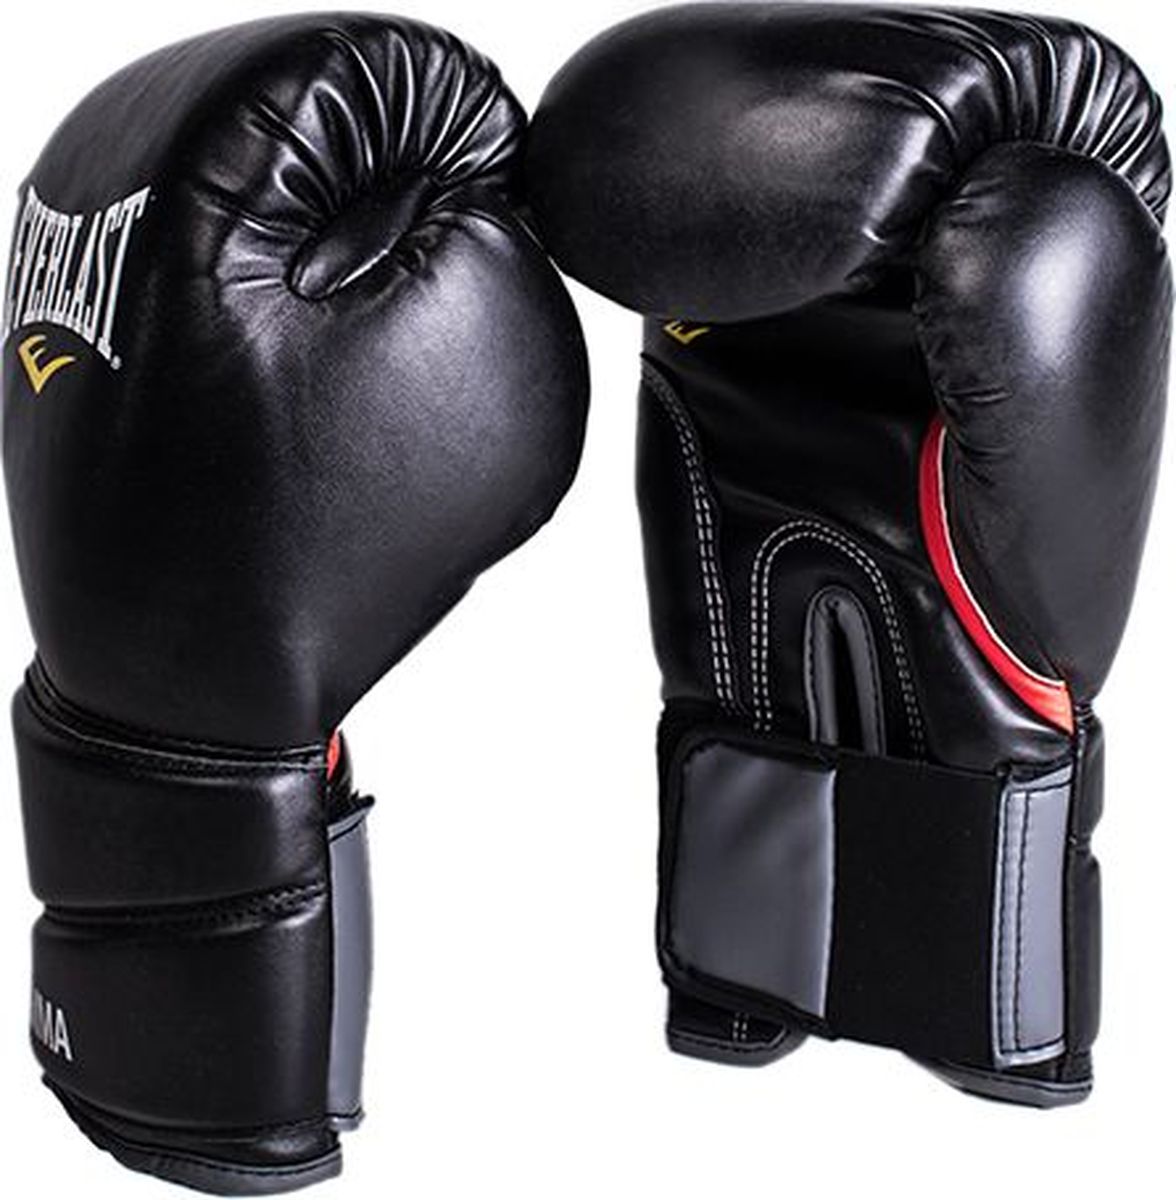 Боксерские перчатки Everlast Pro Style Muay Thai, 7352B, черный, вес 12 унций